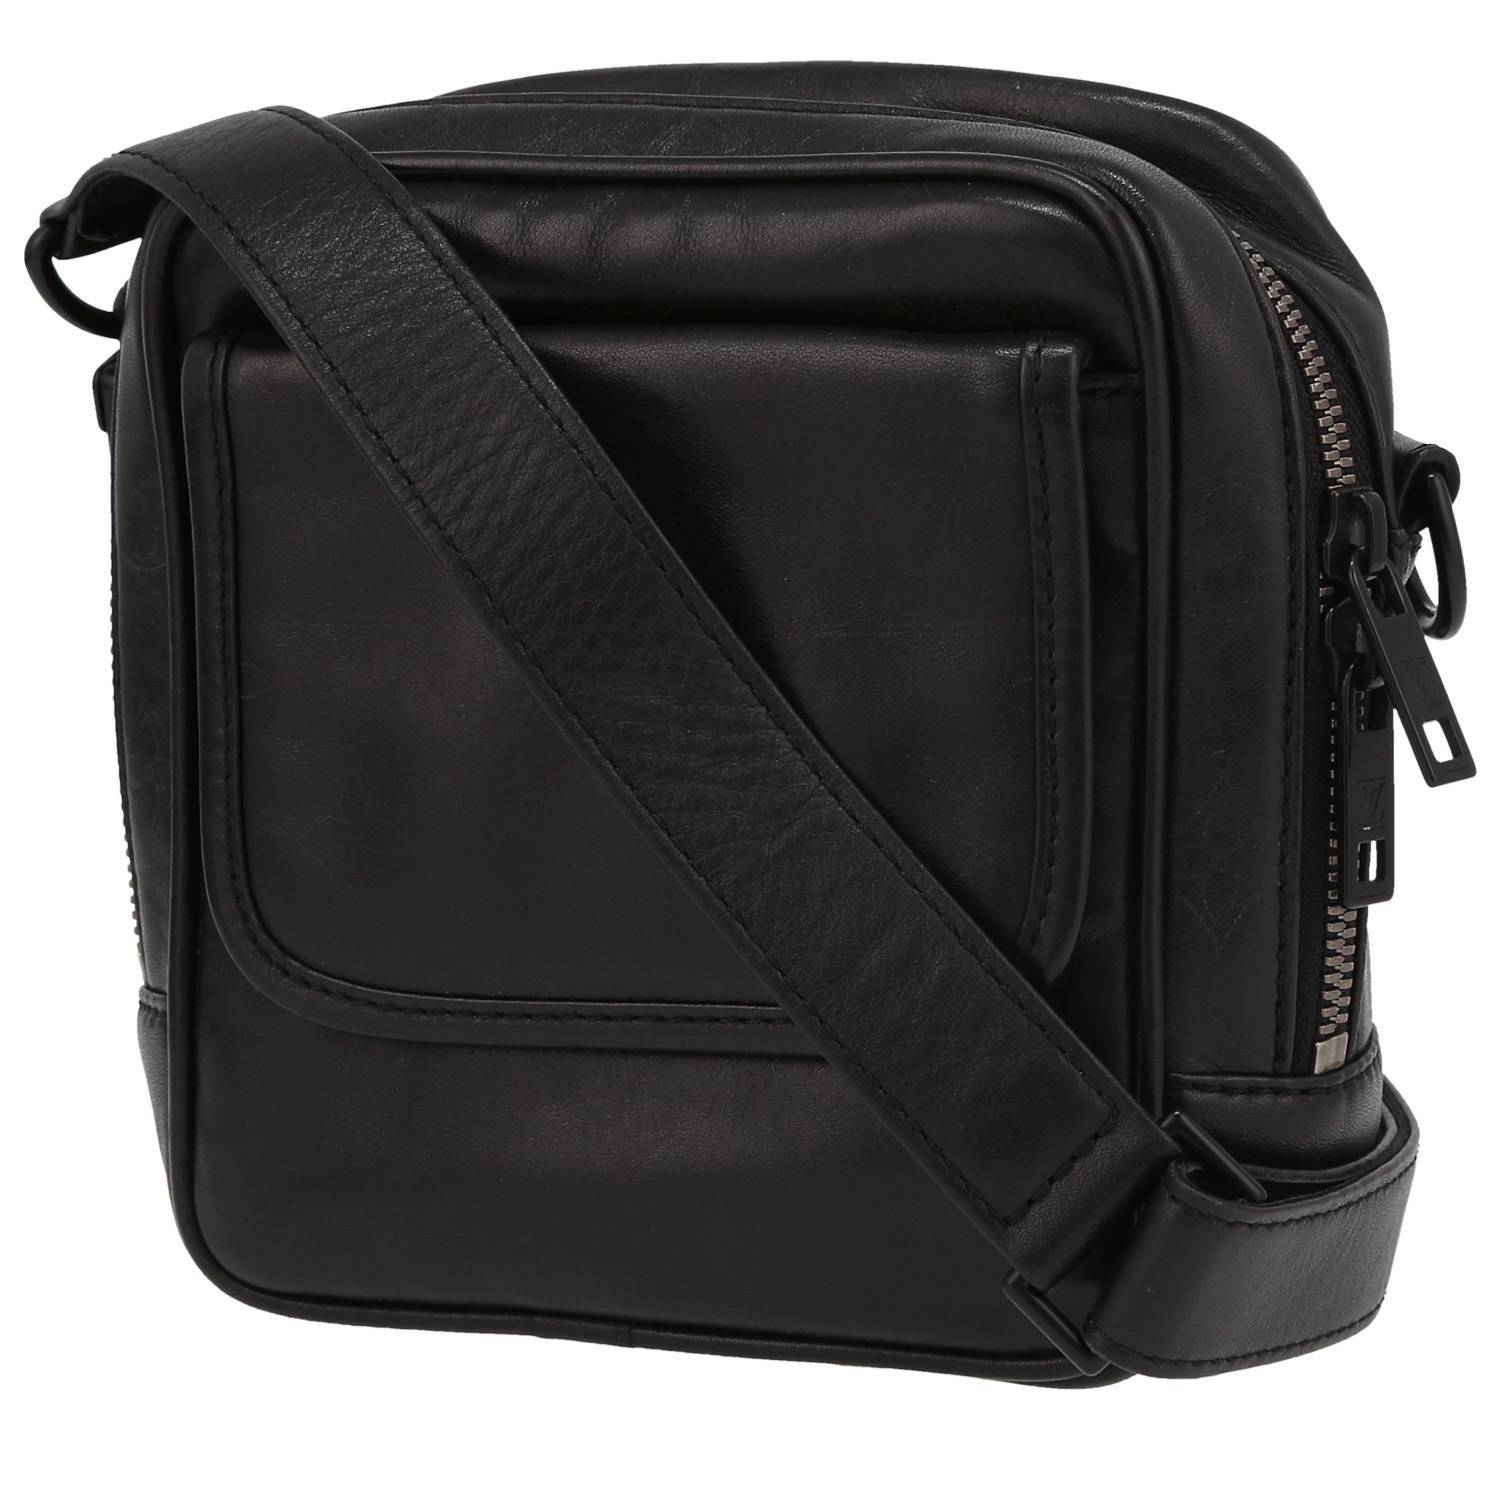 Laptop Bag TOMMY HILFIGER Business Leather Slim Comp Bag